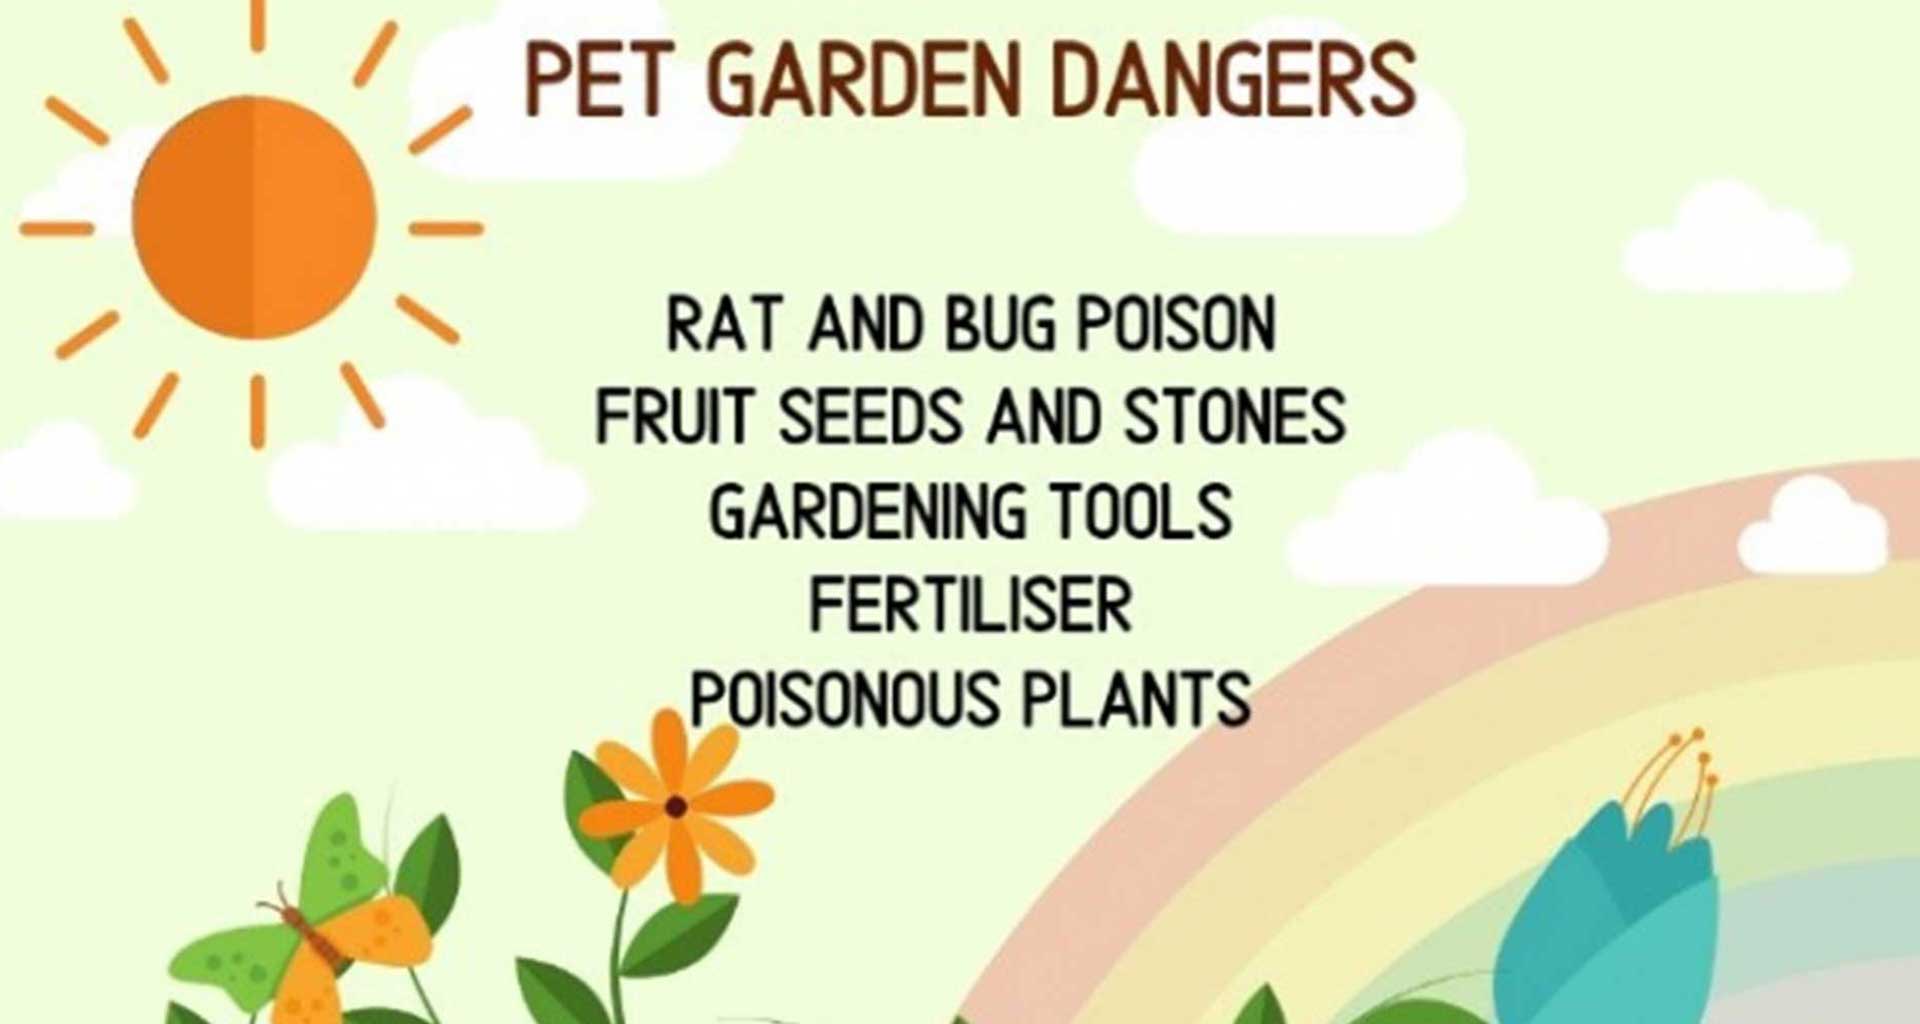 Hazards in the garden